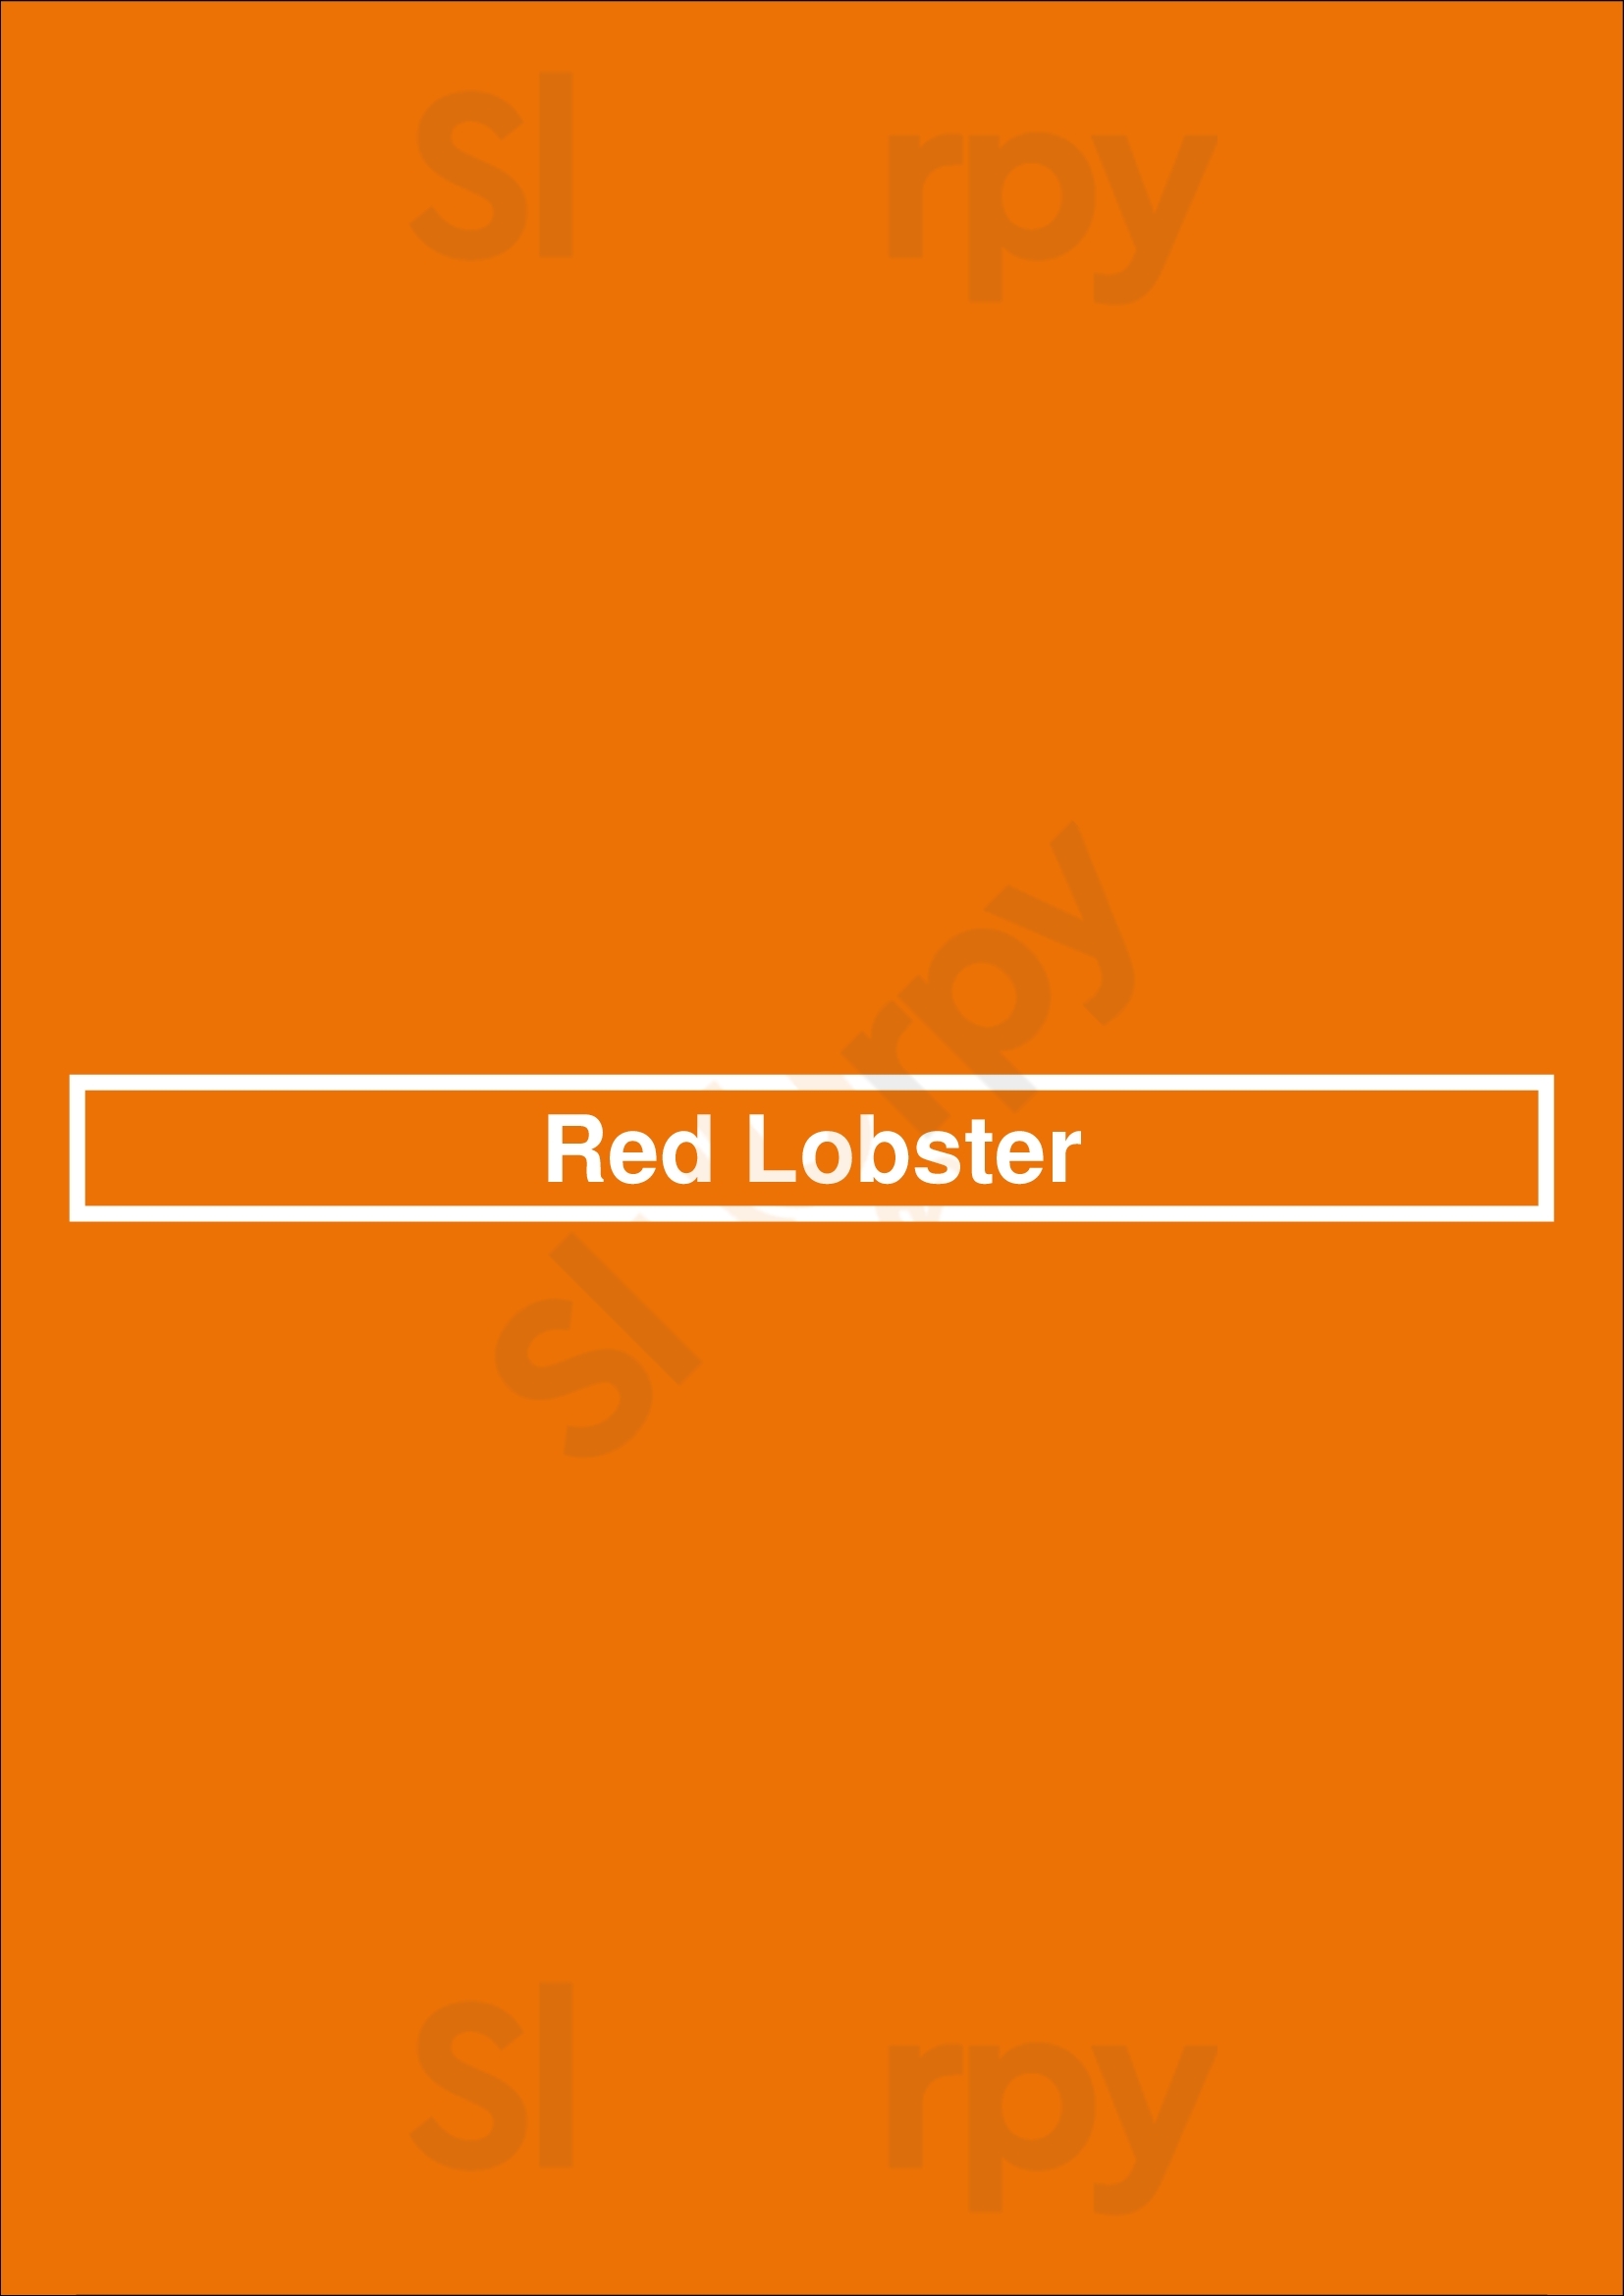 Red Lobster London Menu - 1